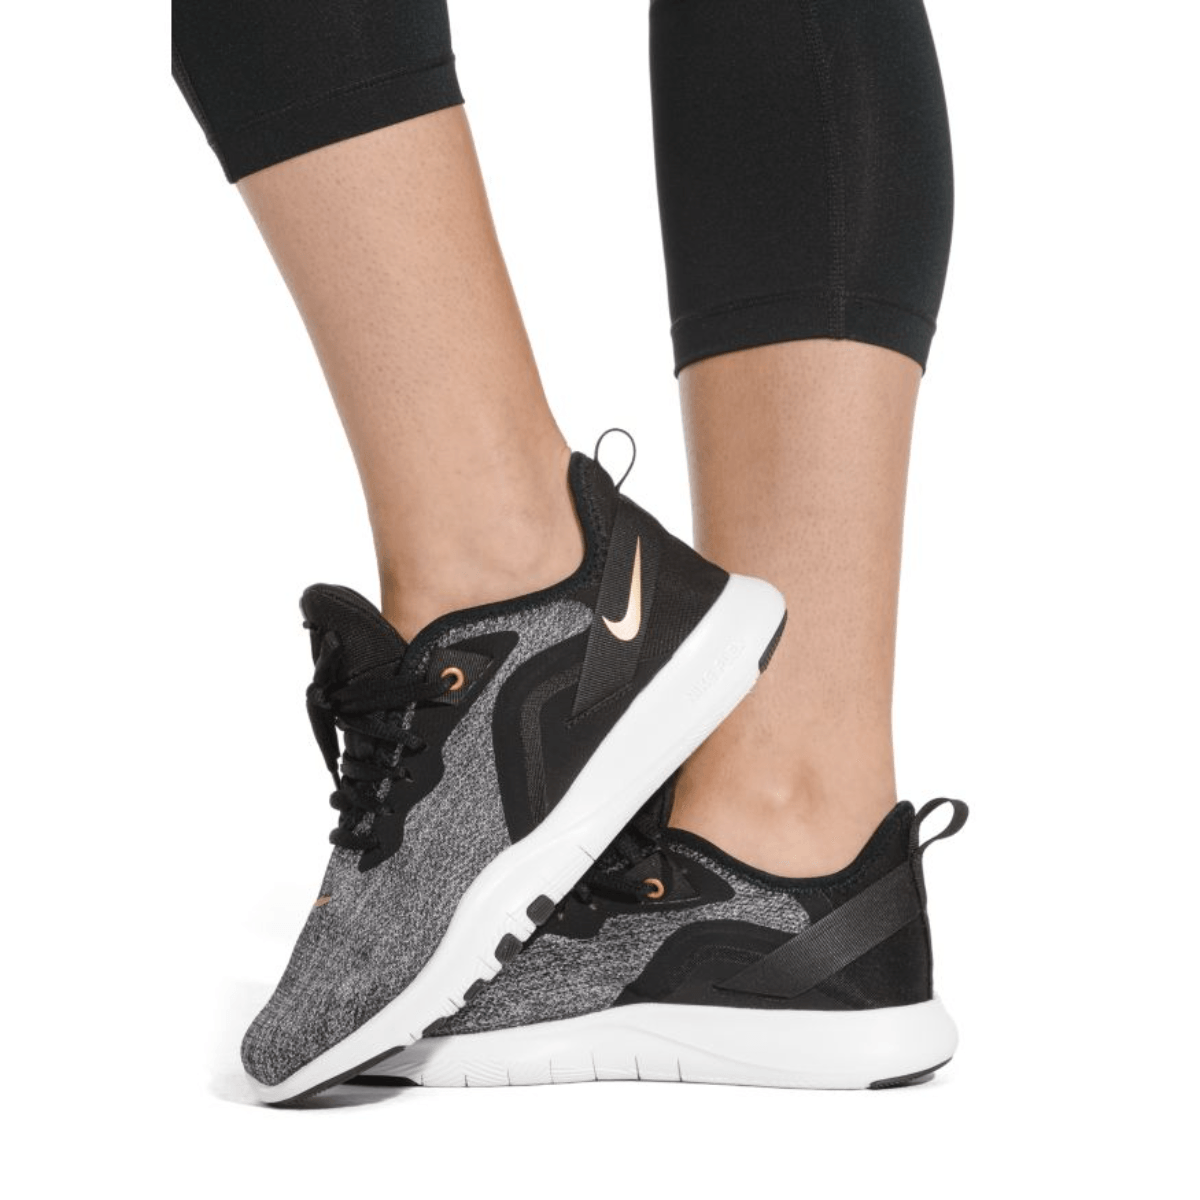 Offentliggørelse Ulydighed konto Nike Flex TR 9 Training Shoe - Women's - Als.com